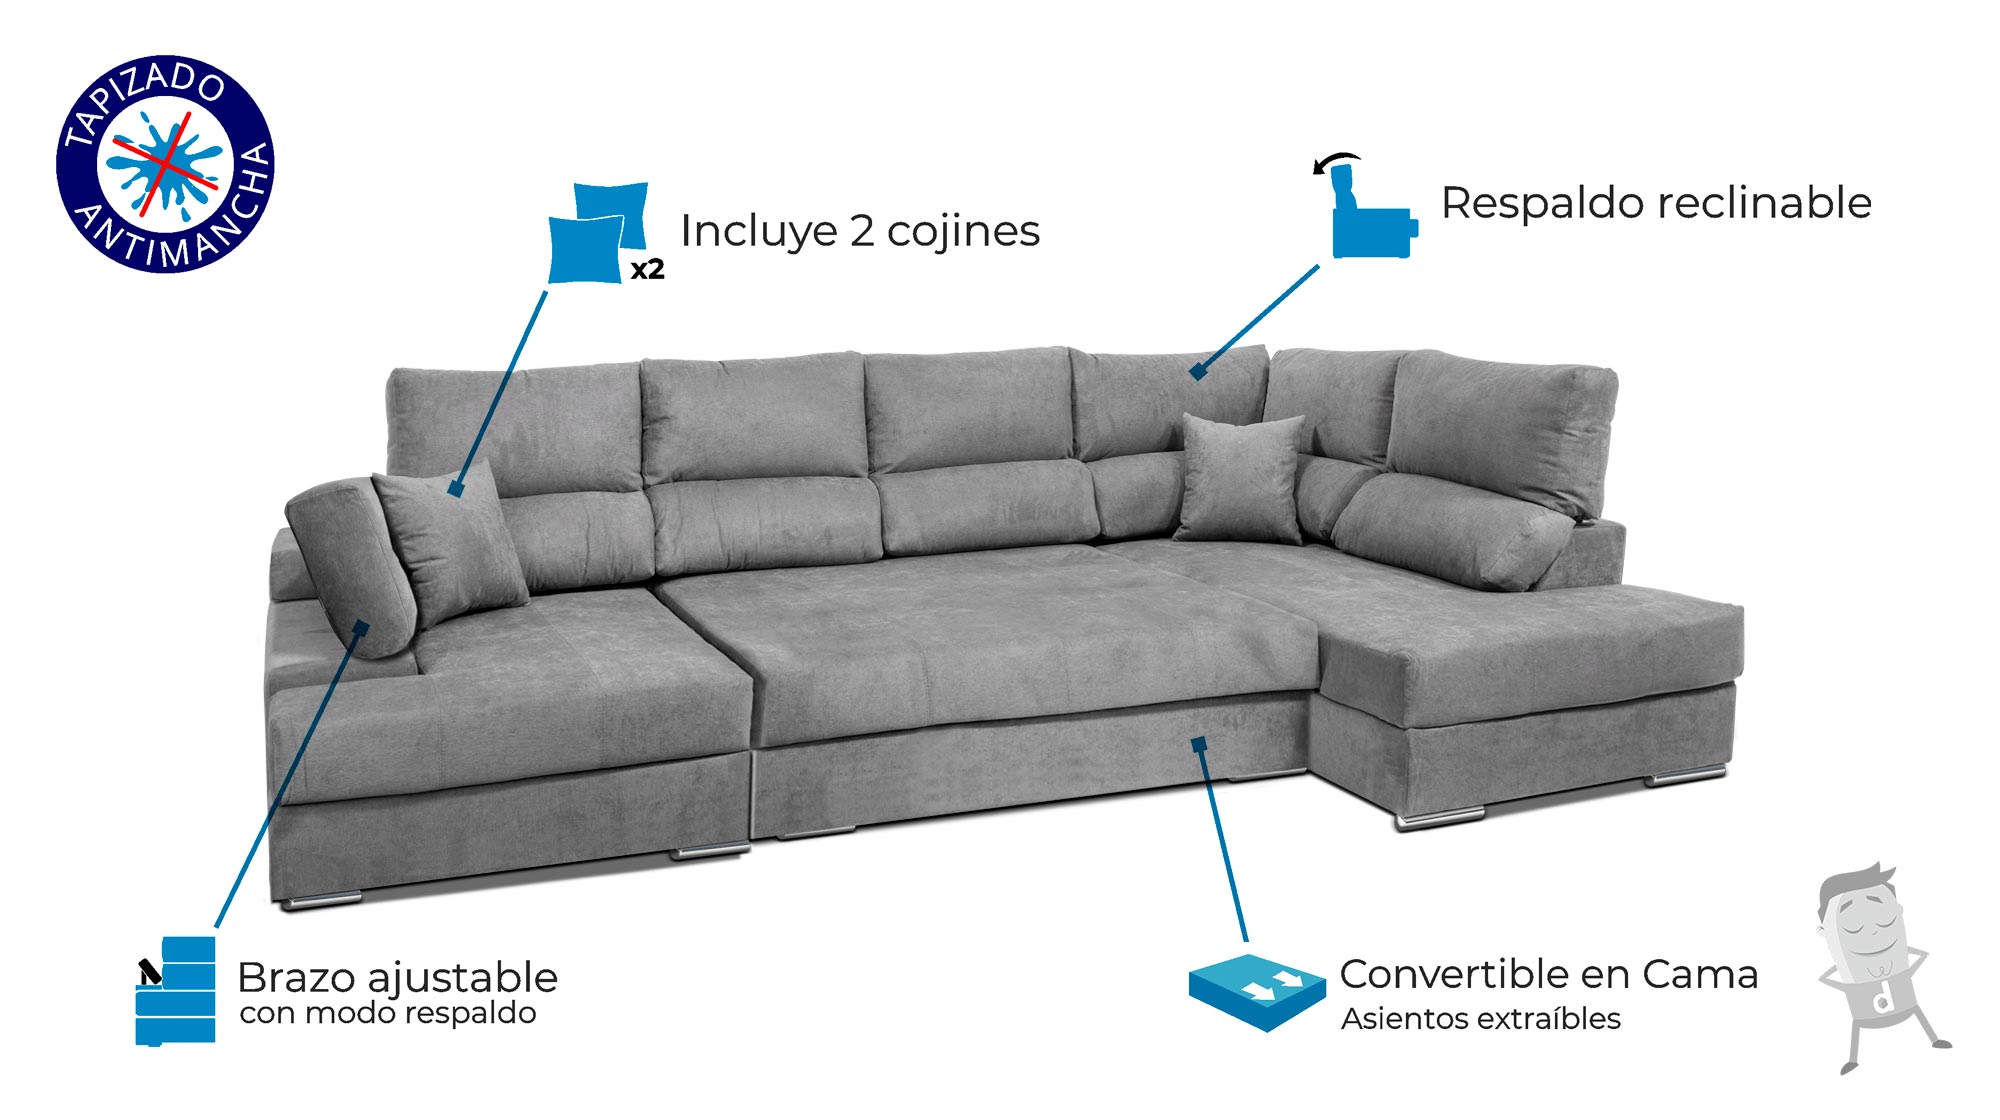 Sofa-Chaise-Longue-Dormitorum-tapizado-en-tela-color-gris-perla-abierto-indicacion